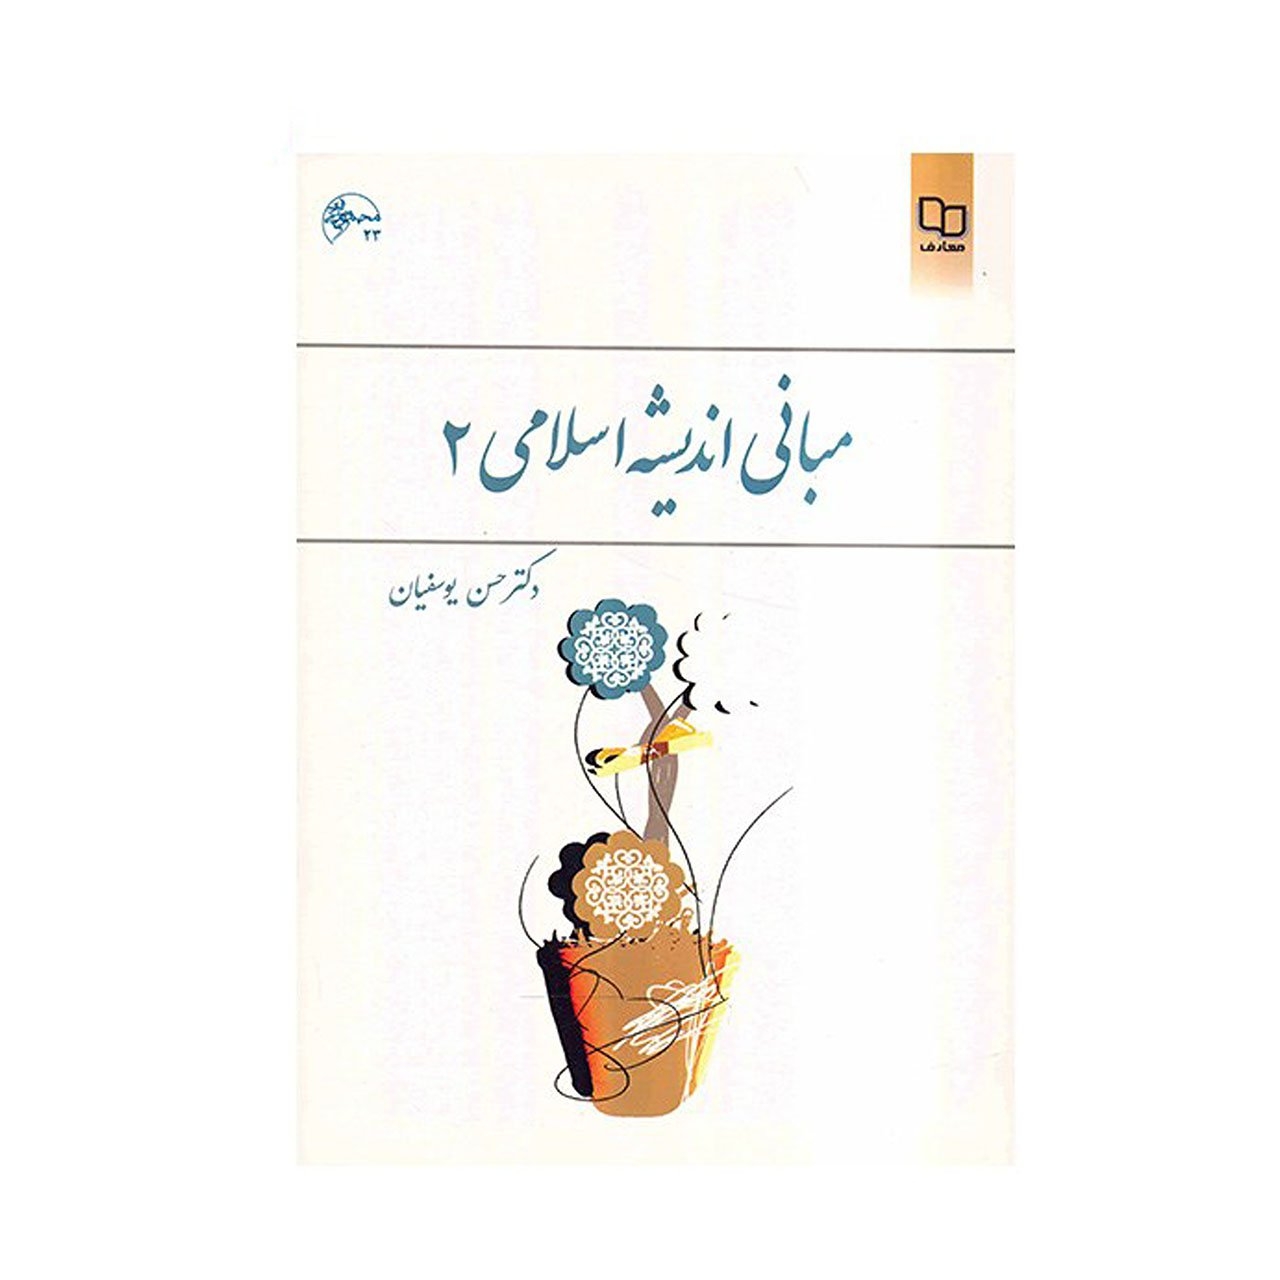 کتاب مبانی اندیشه اسلامی 2 اثر حسن یوسفیان